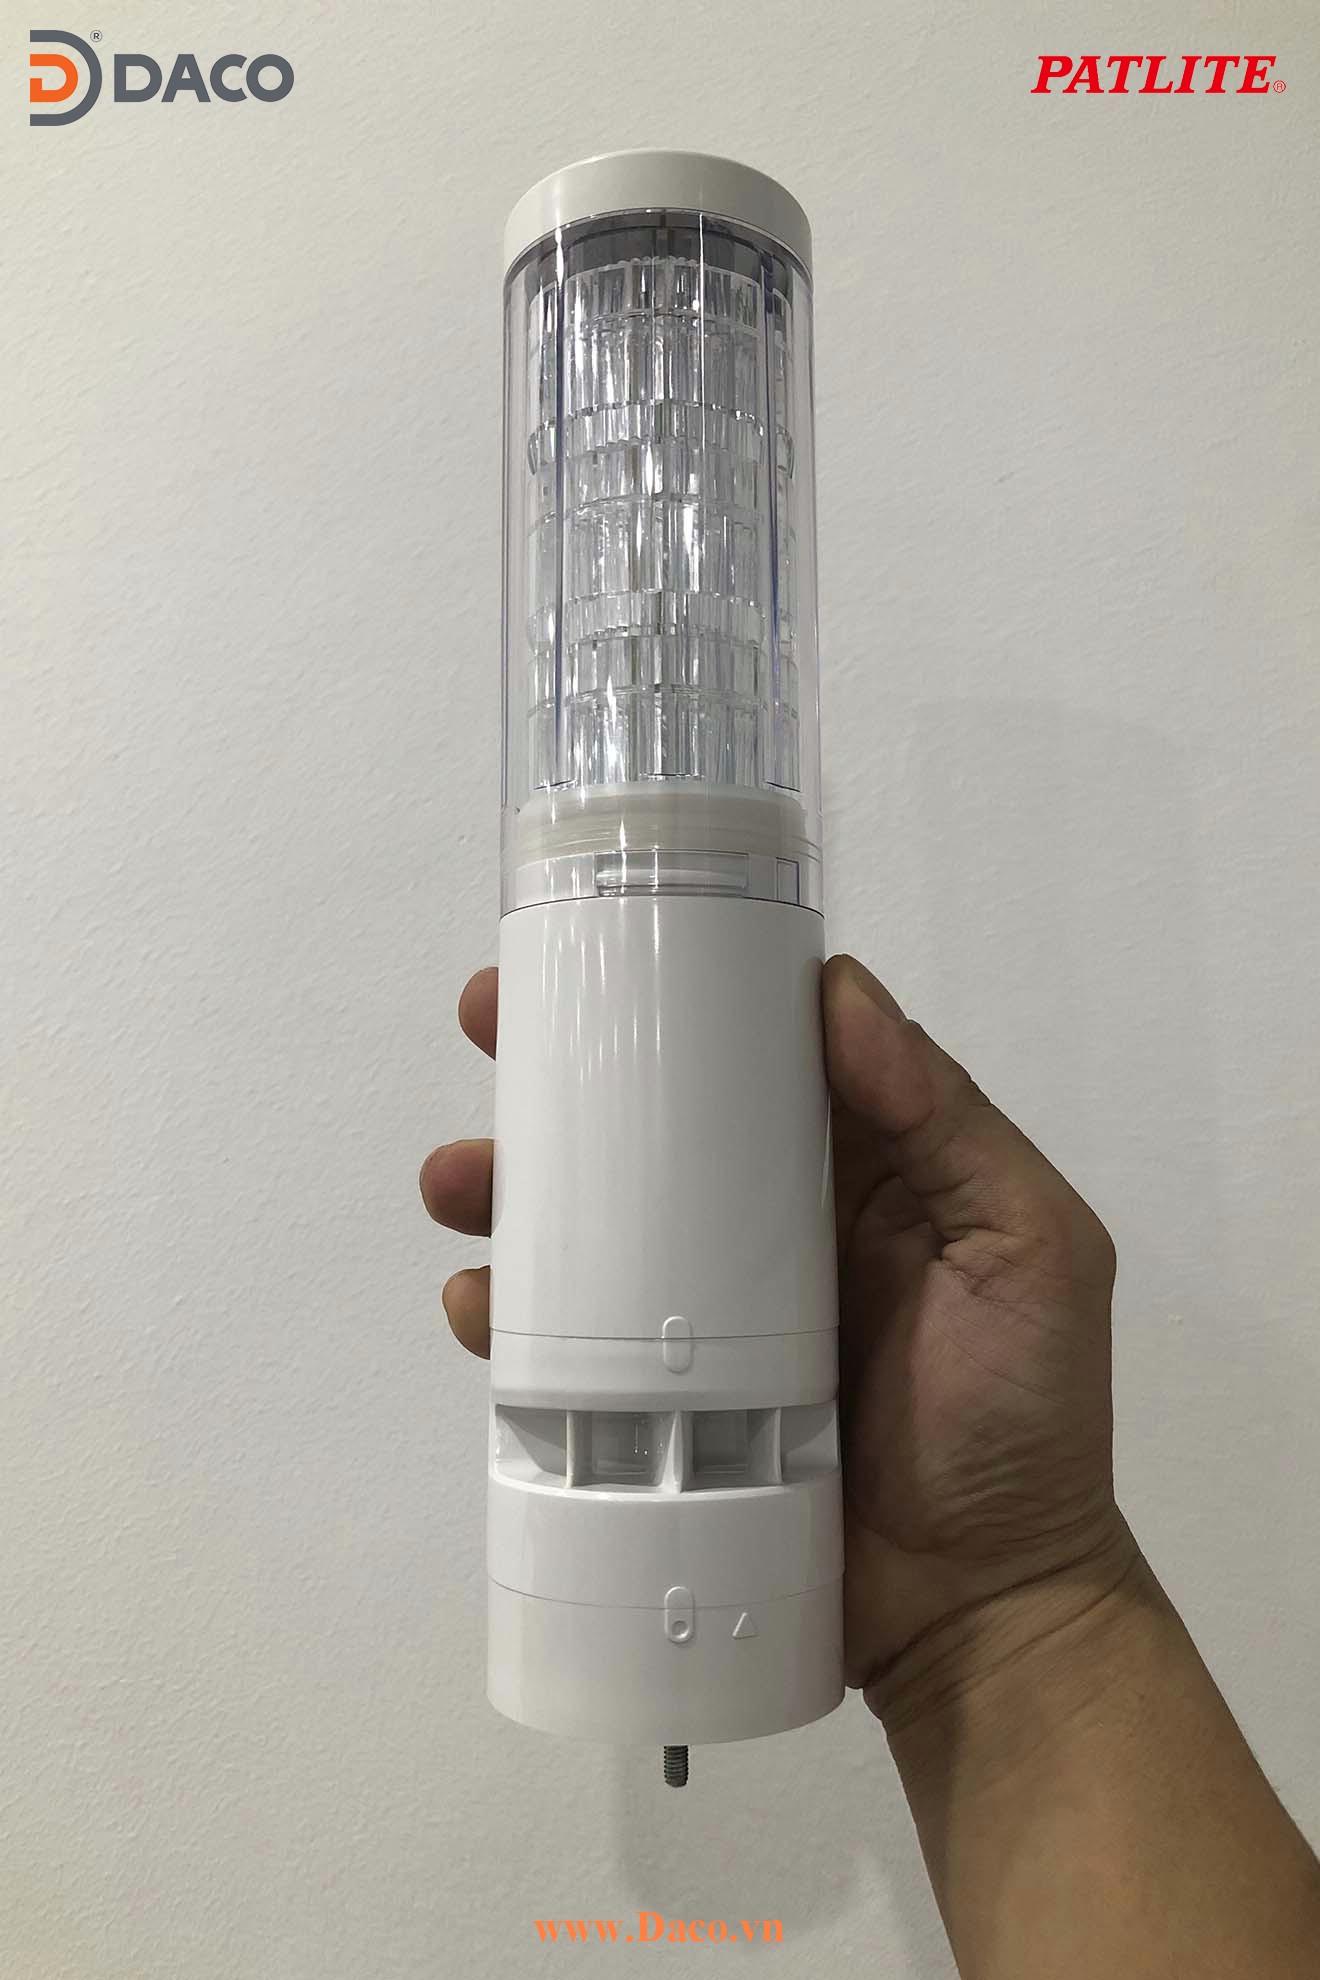 LR6-3DTNWB Hình ảnh thực tế Đèn tháp Kaizen Đa Màu-Hoạt Động theo thời gian Φ60 Patlite